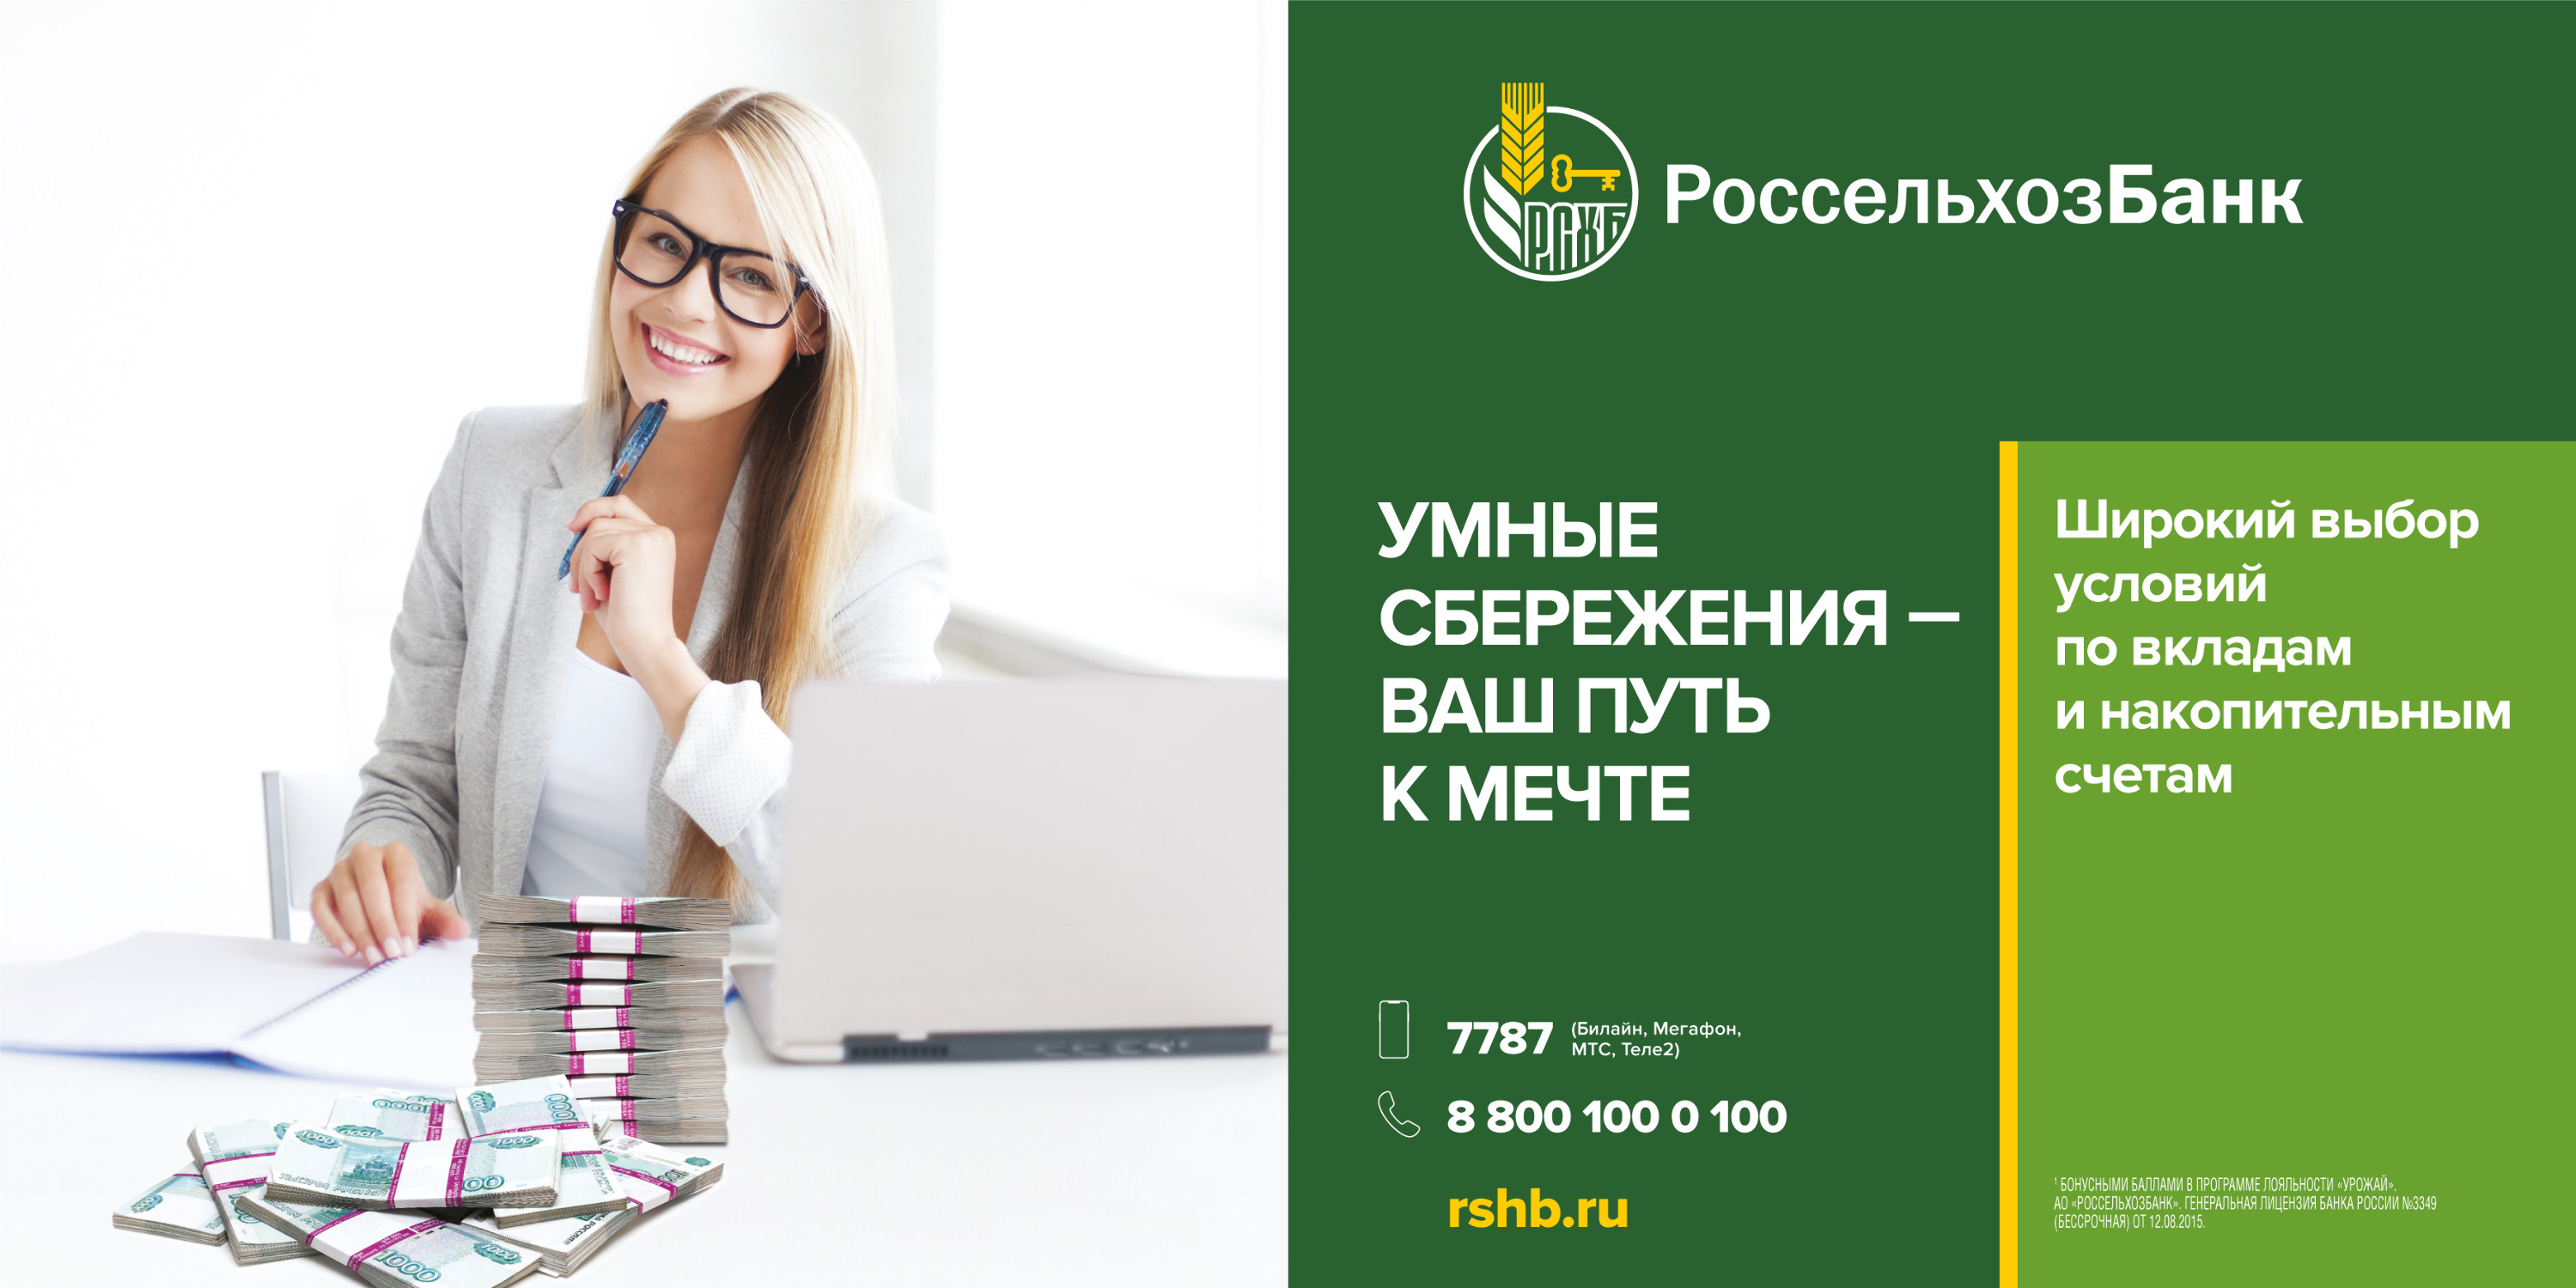 Более подробную информацию по всем депозитным продуктам банка можно получить во всех офисах Красноярского края